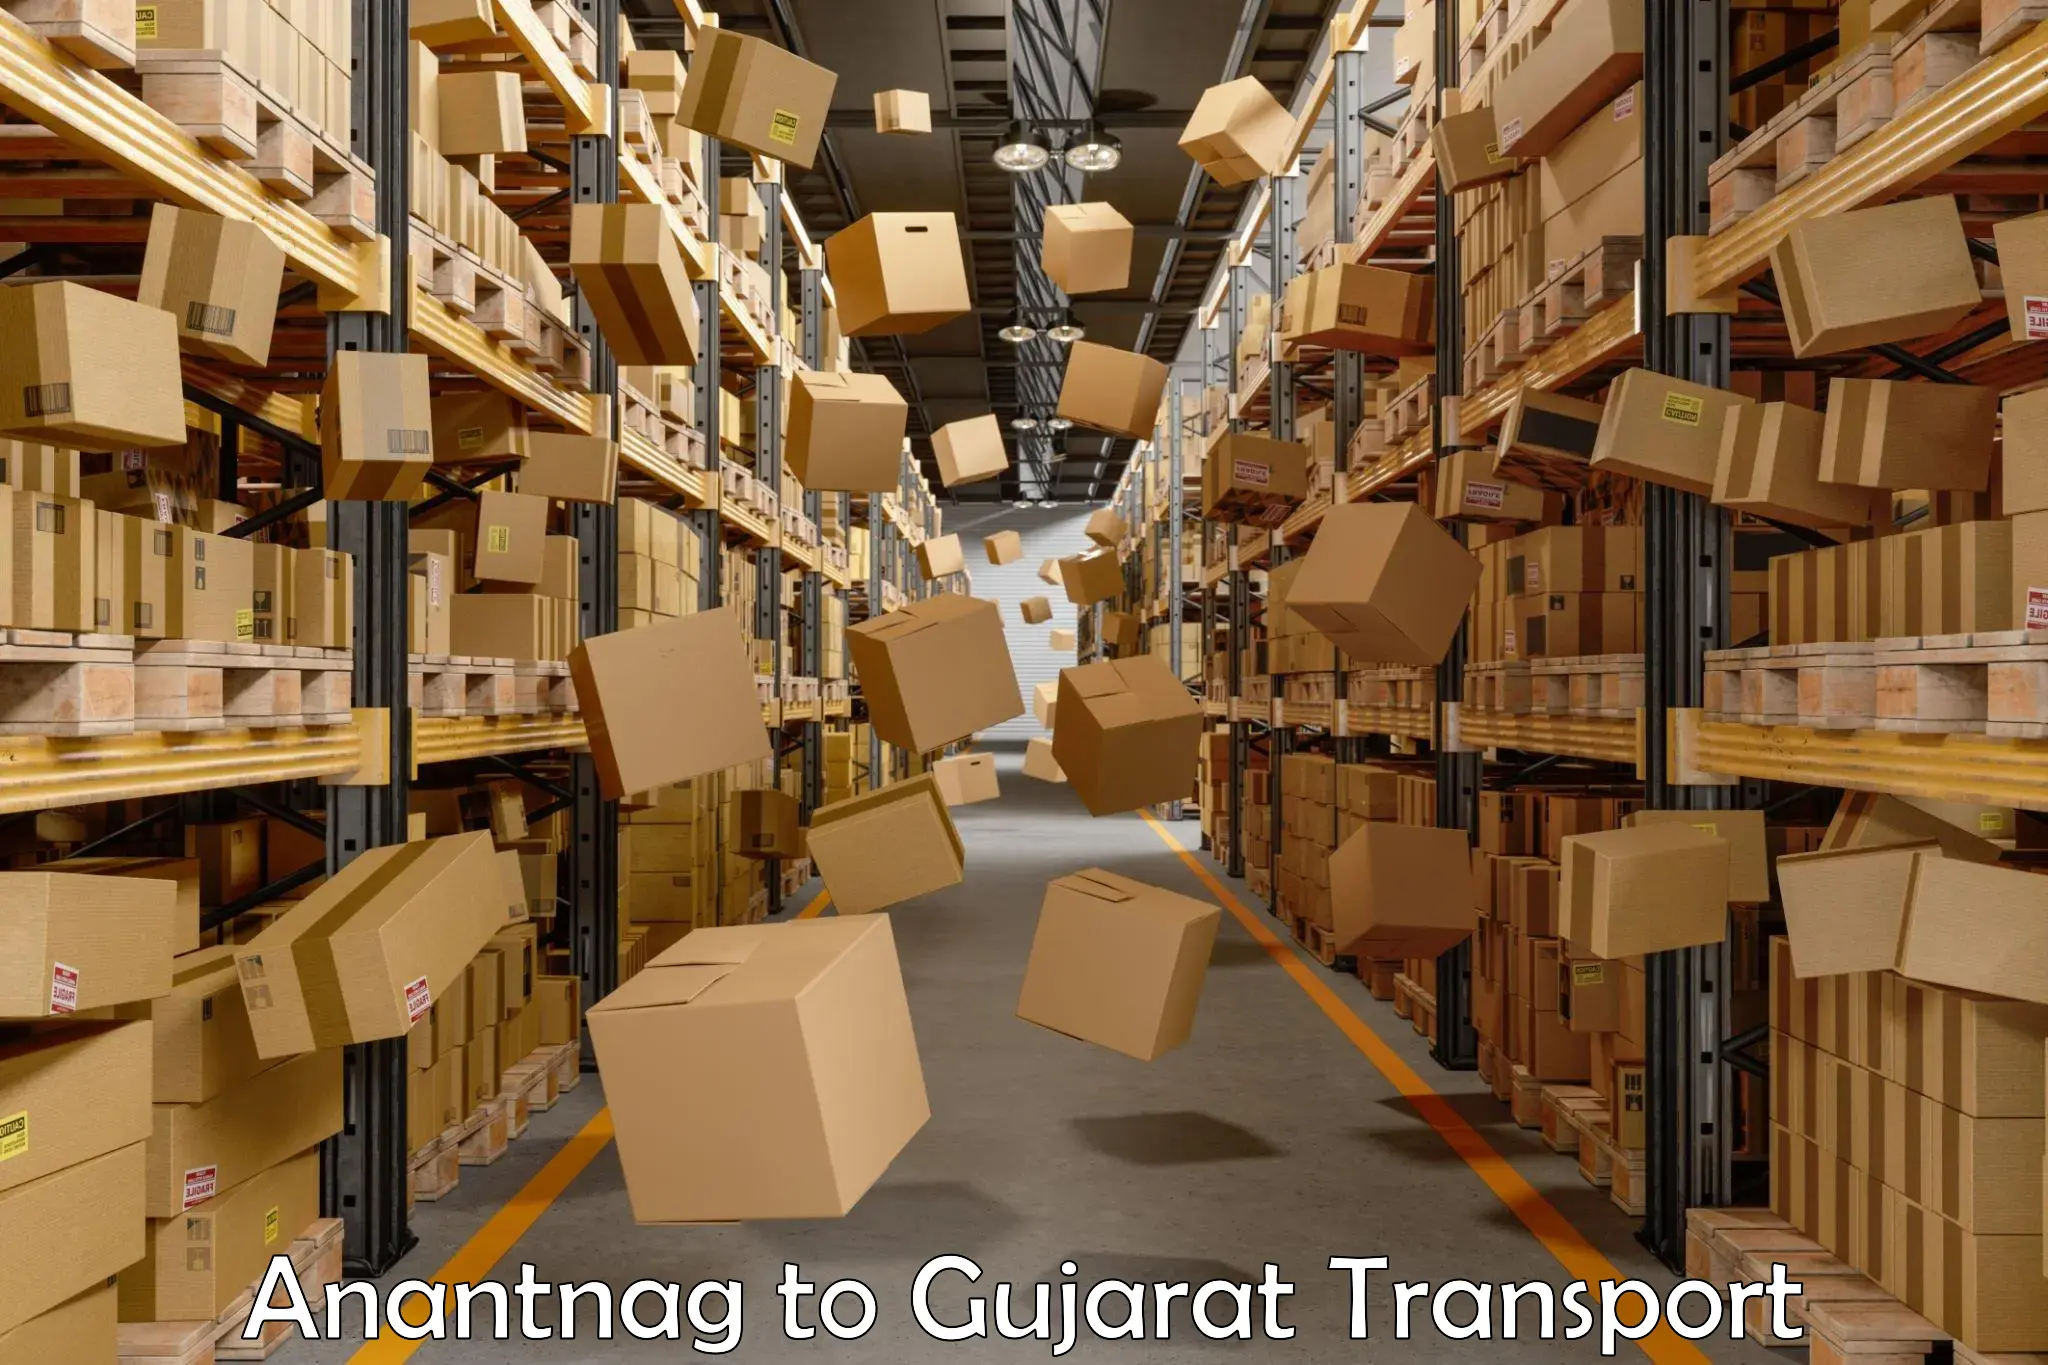 Online transport service Anantnag to Kalol Gujarat